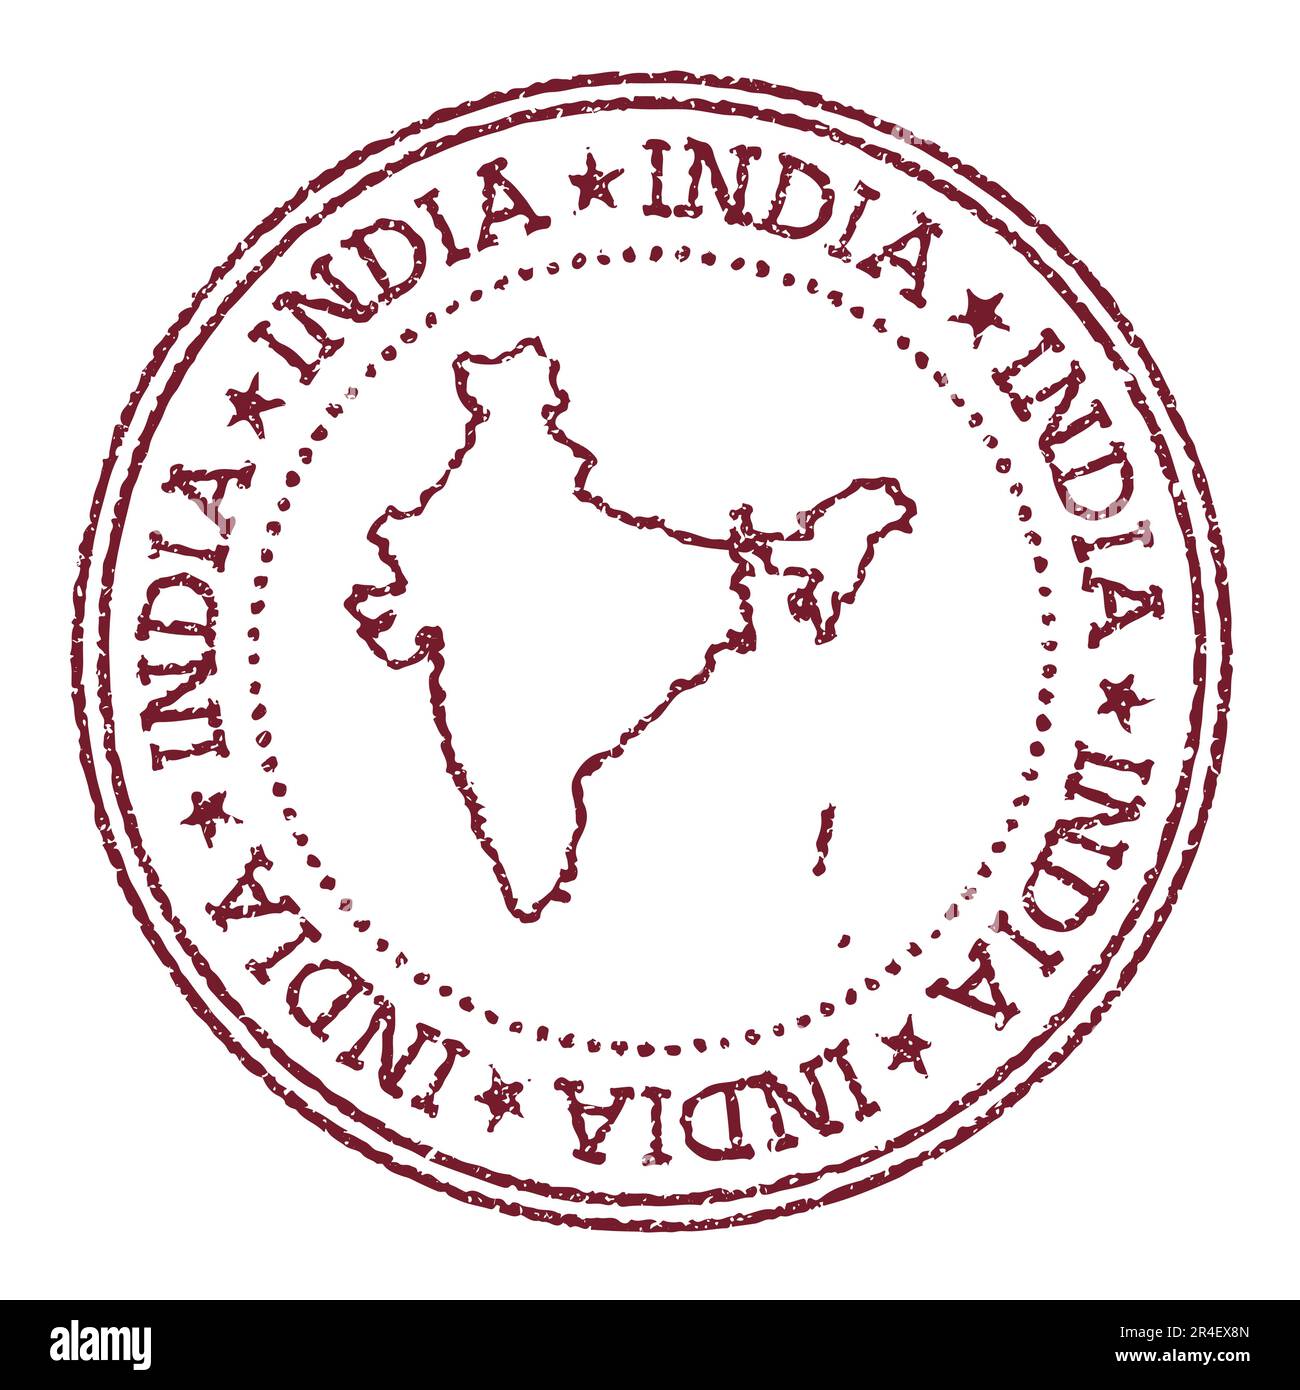 Indischer Gummistempel mit Landkarte. Vintage-roter Passstempel mit kreisförmigem Text und Sternen, Vektorgrafik. Stock Vektor